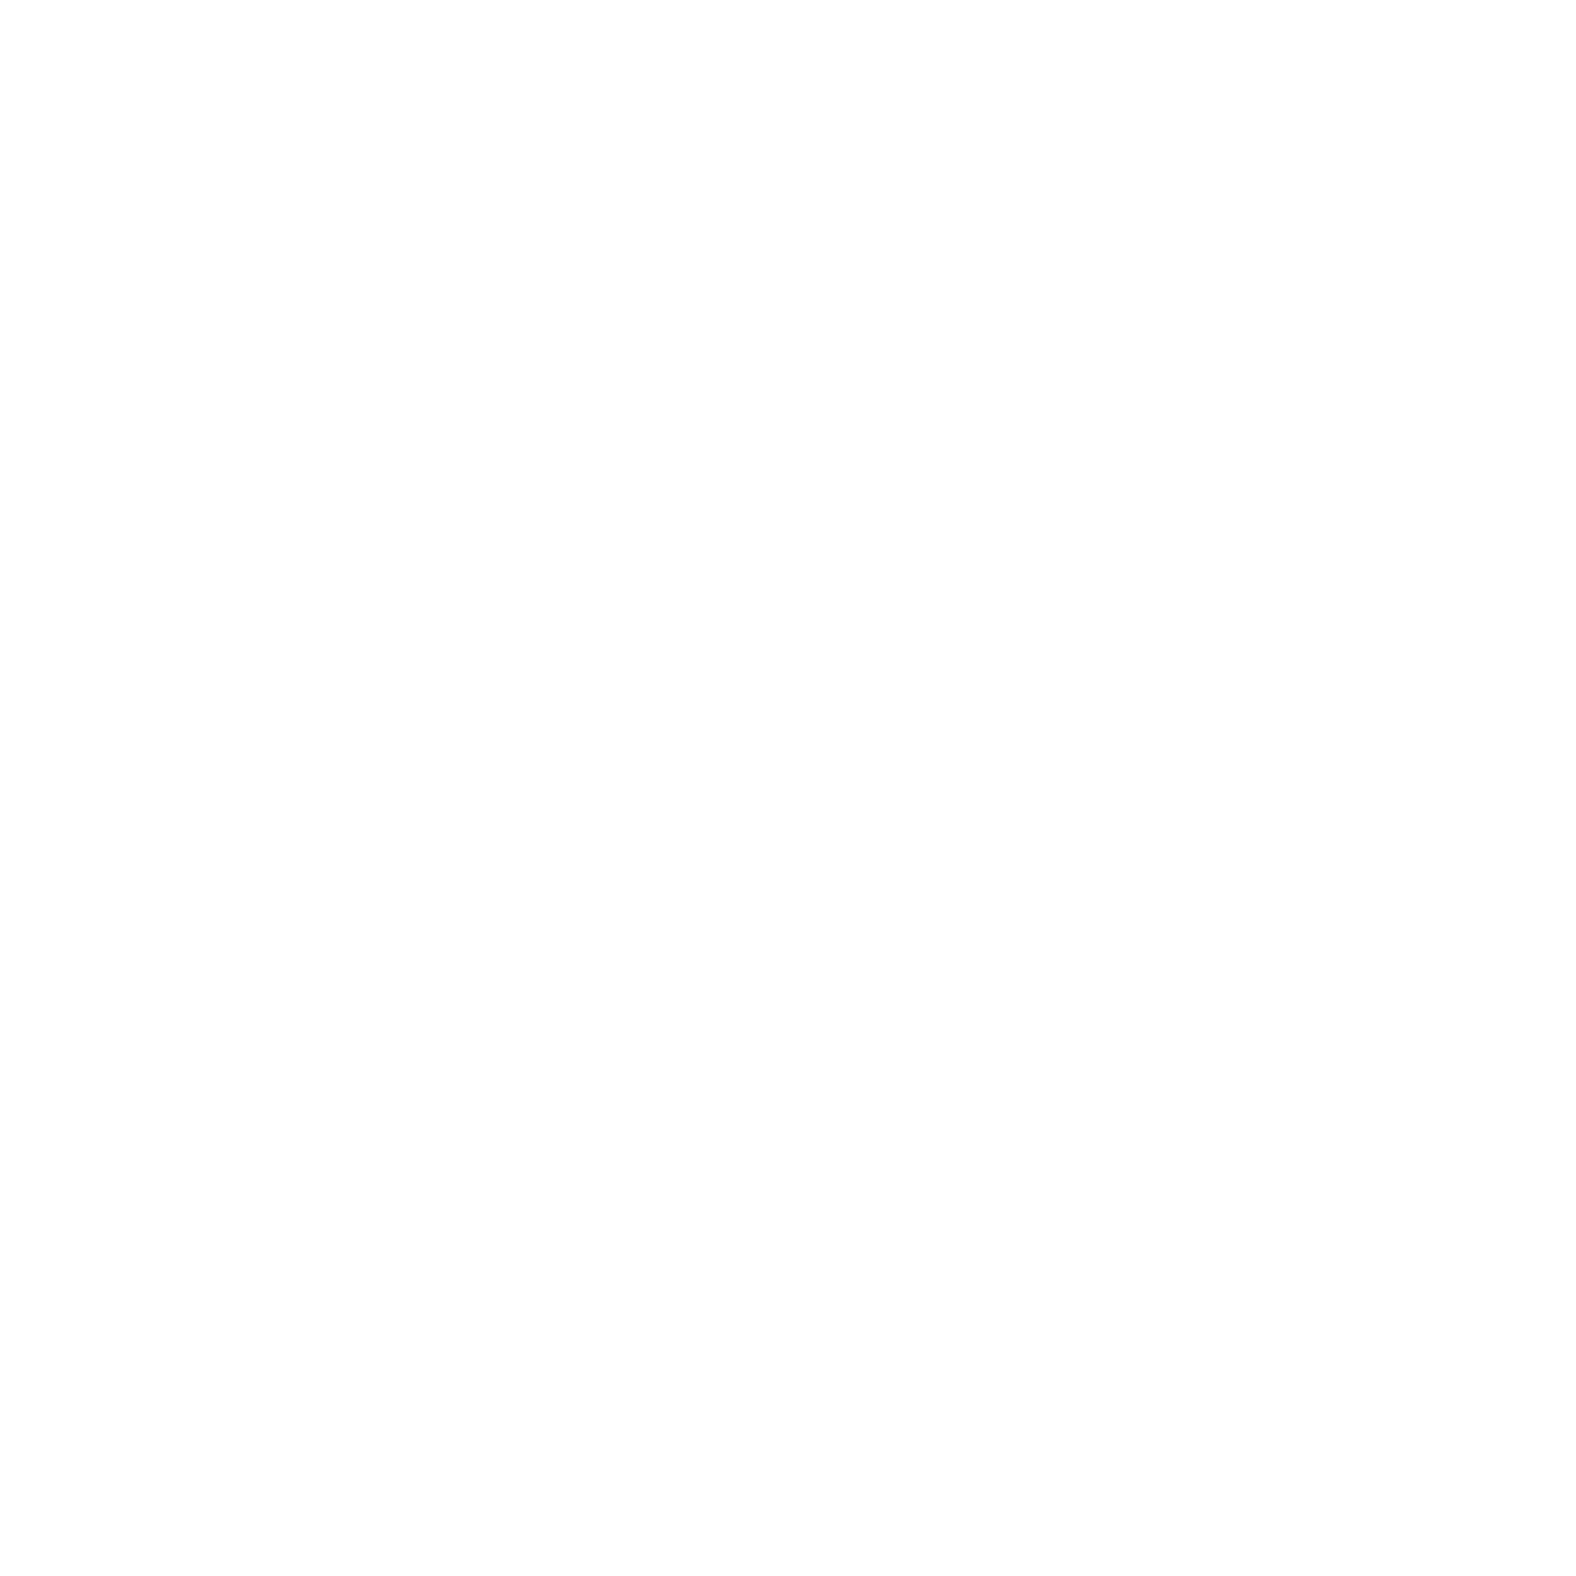 Aedas Homes logo pour fonds sombres (PNG transparent)